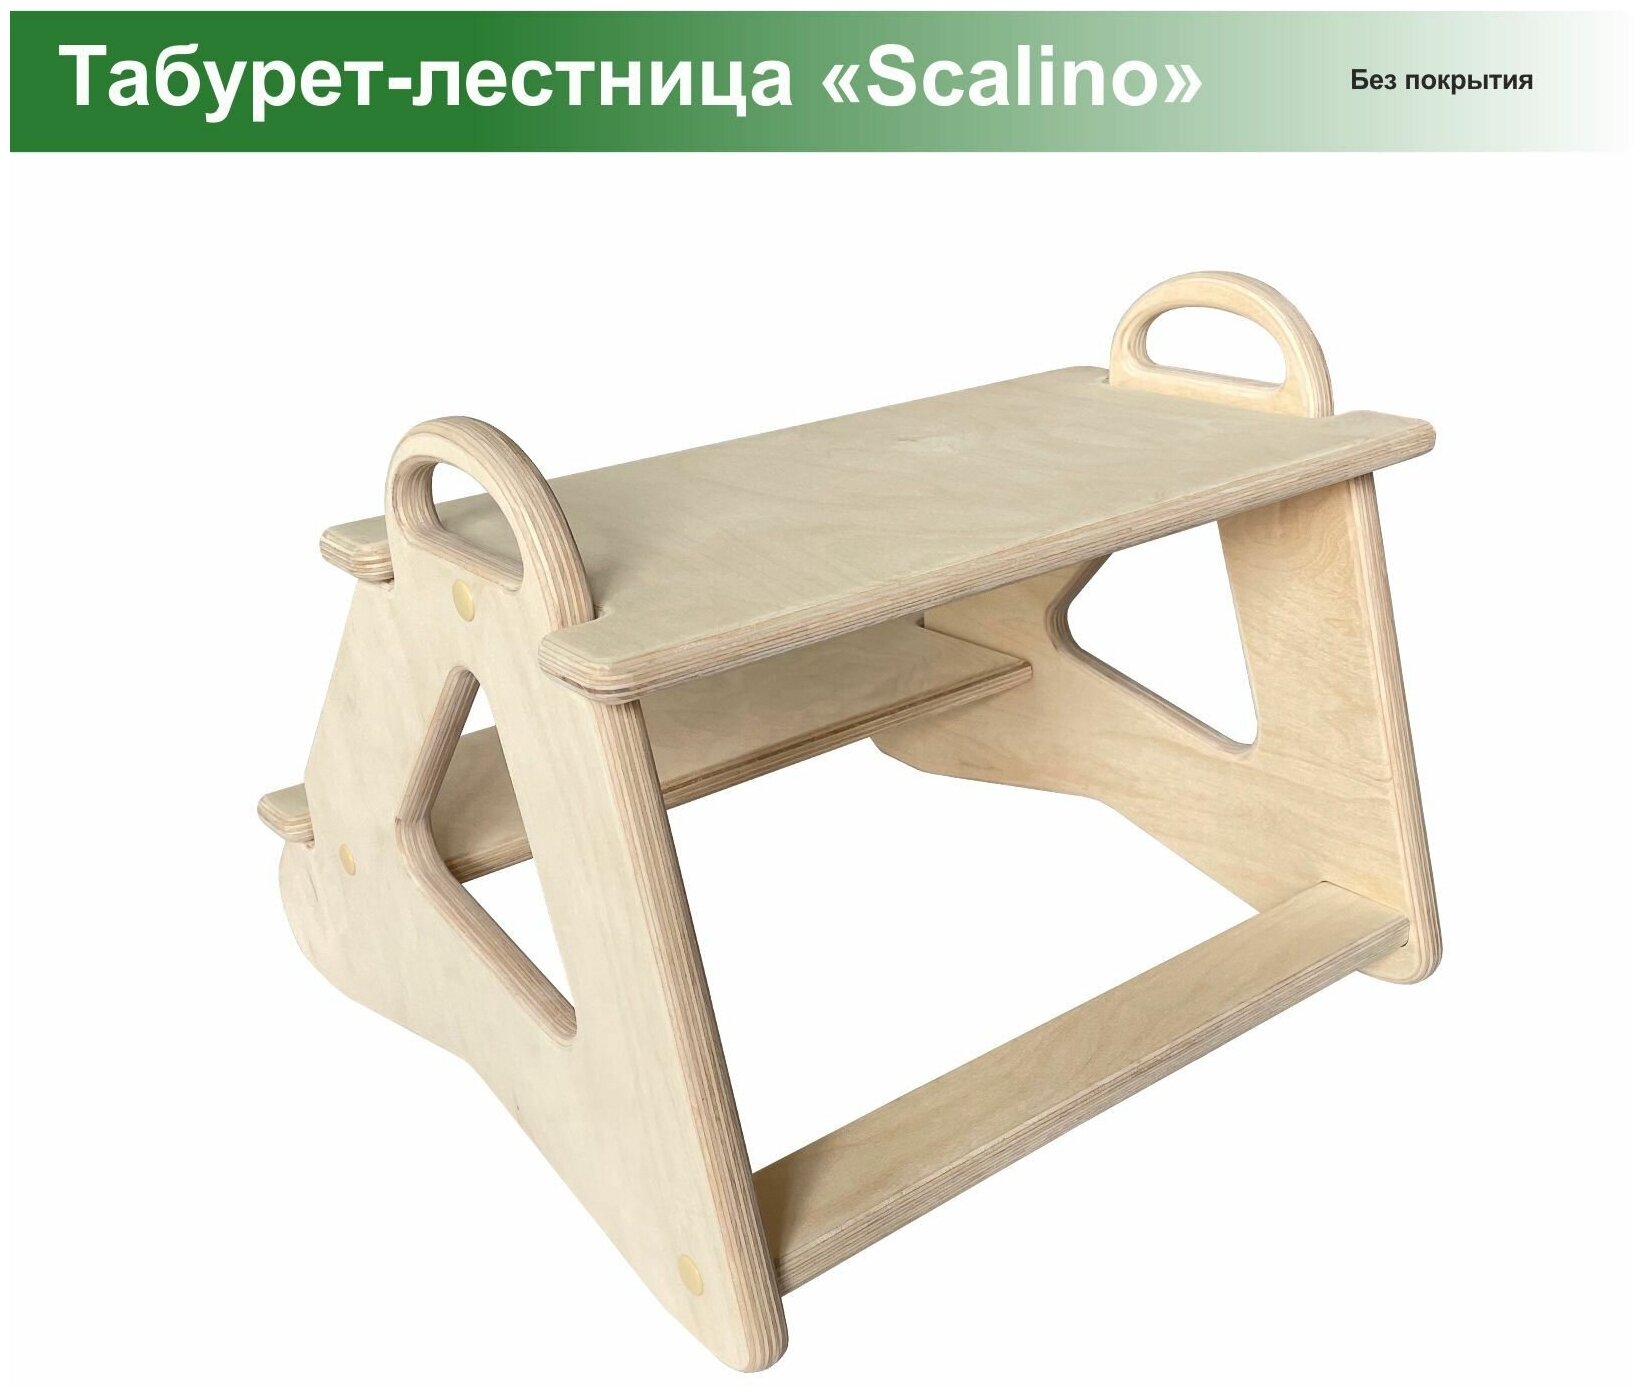 Табурет стремянка детская Scalino, для кухни, подставка под ноги. Шлифованный, без покрытия. - фотография № 6